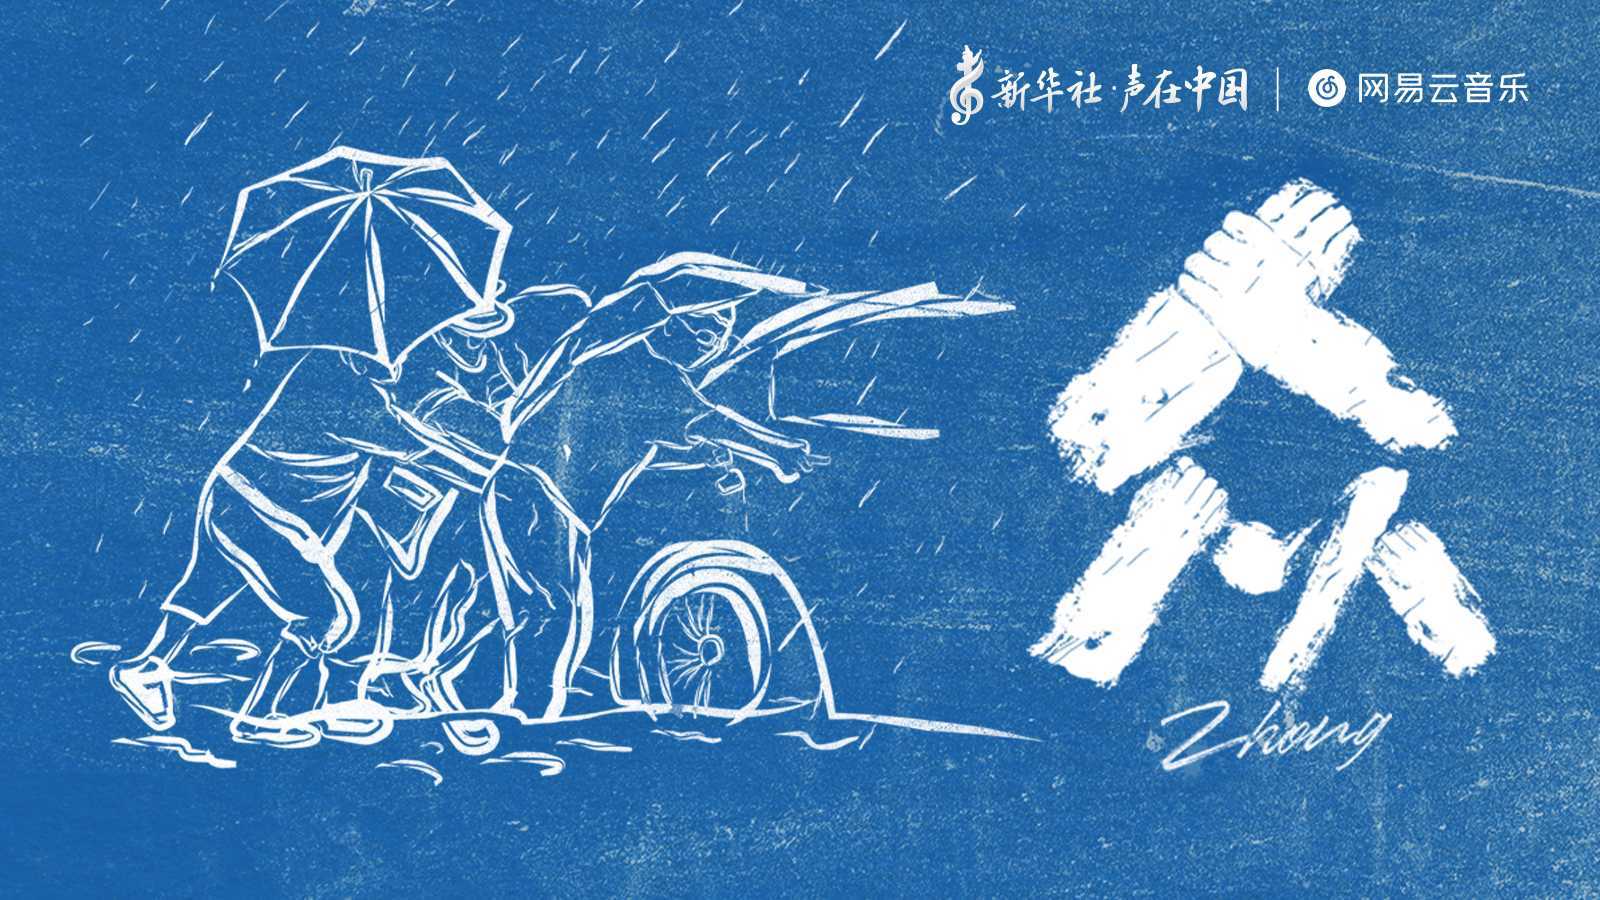 新华社×网易云音乐 | 《众》六个笔画写出最稳固的汉字